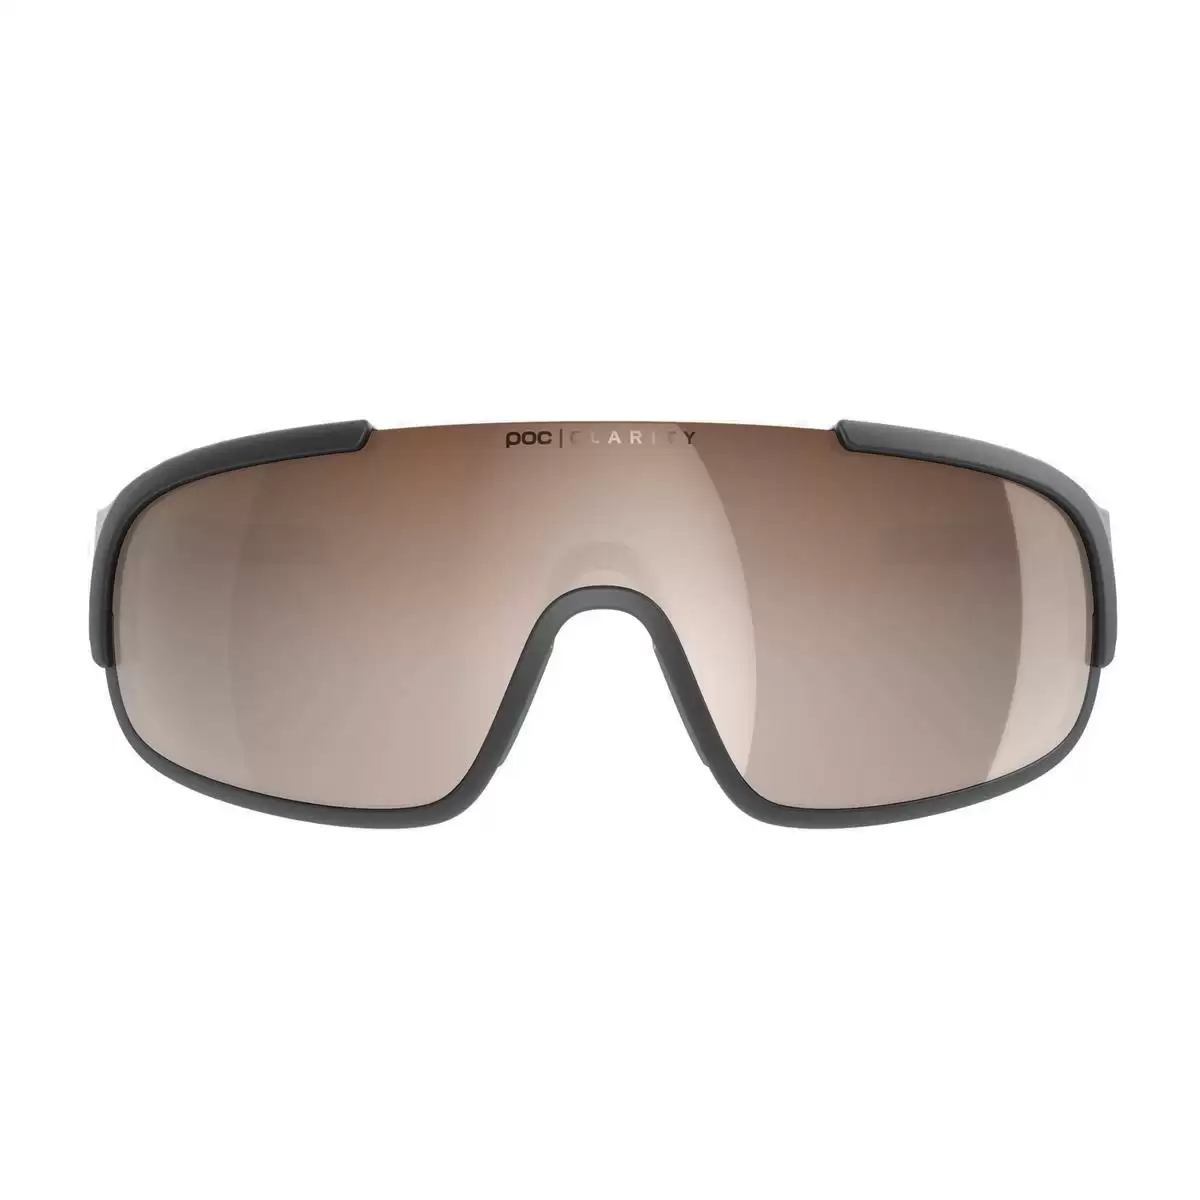 Crave sunglasses Uranium black clarity Brown lens #2